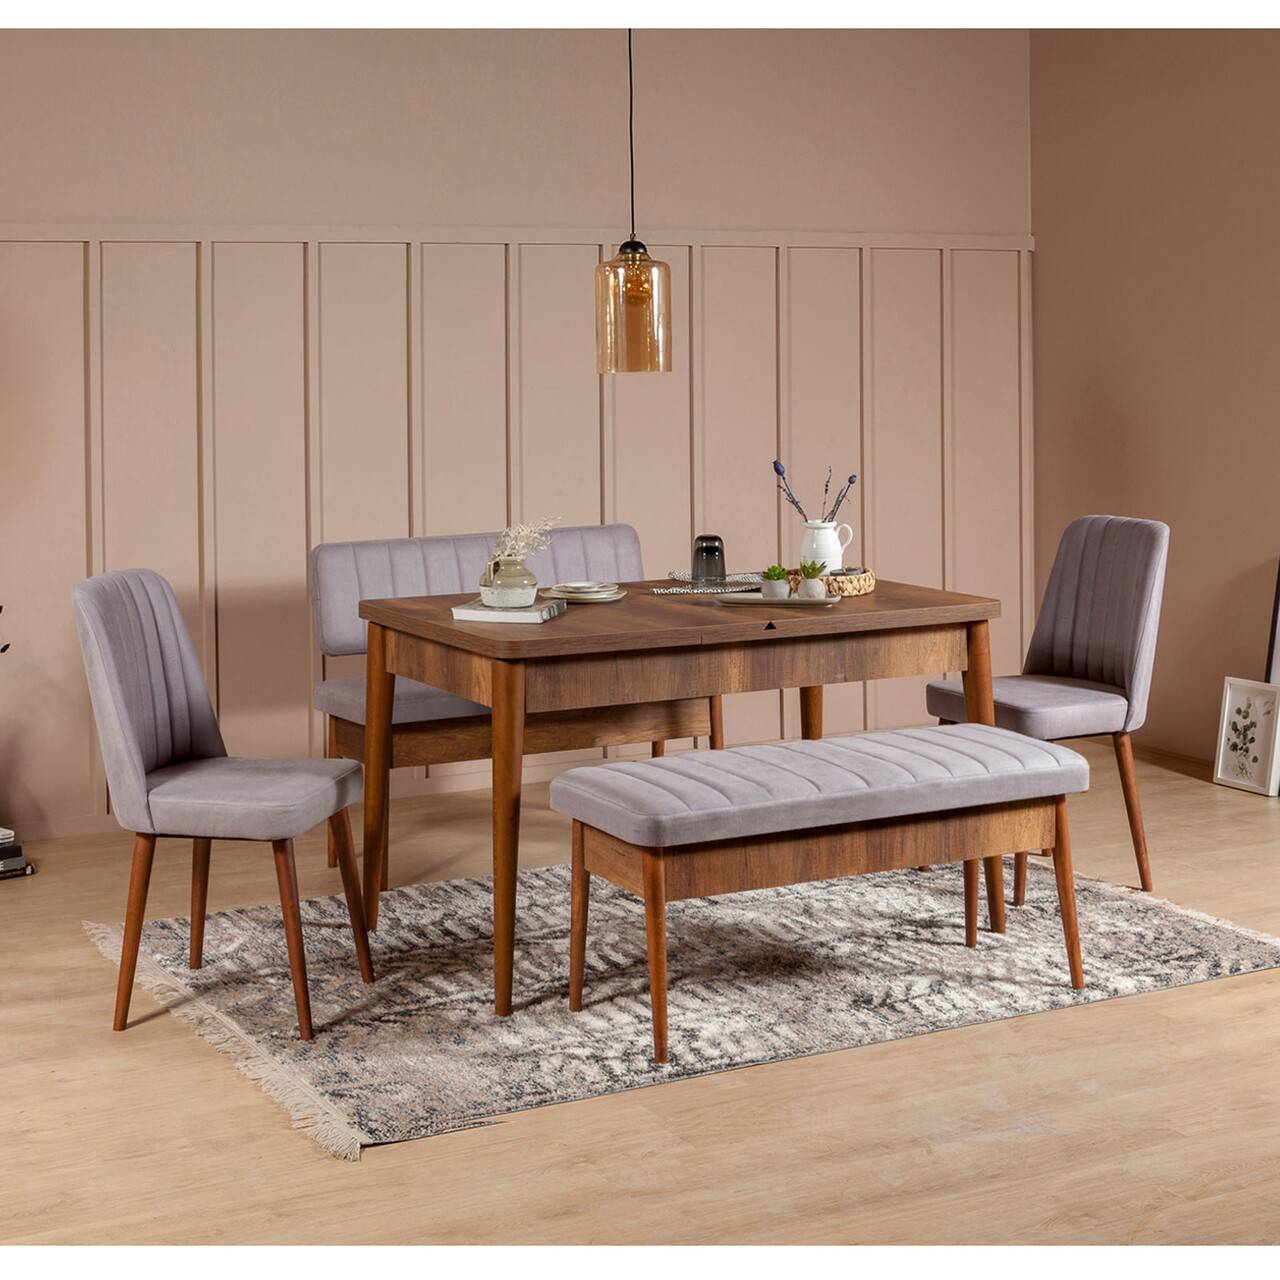 Set ausziehbarer Tisch, 2 Stühle, Bank und Sitzbank Malva Dunkles Holz und grauer Stoff